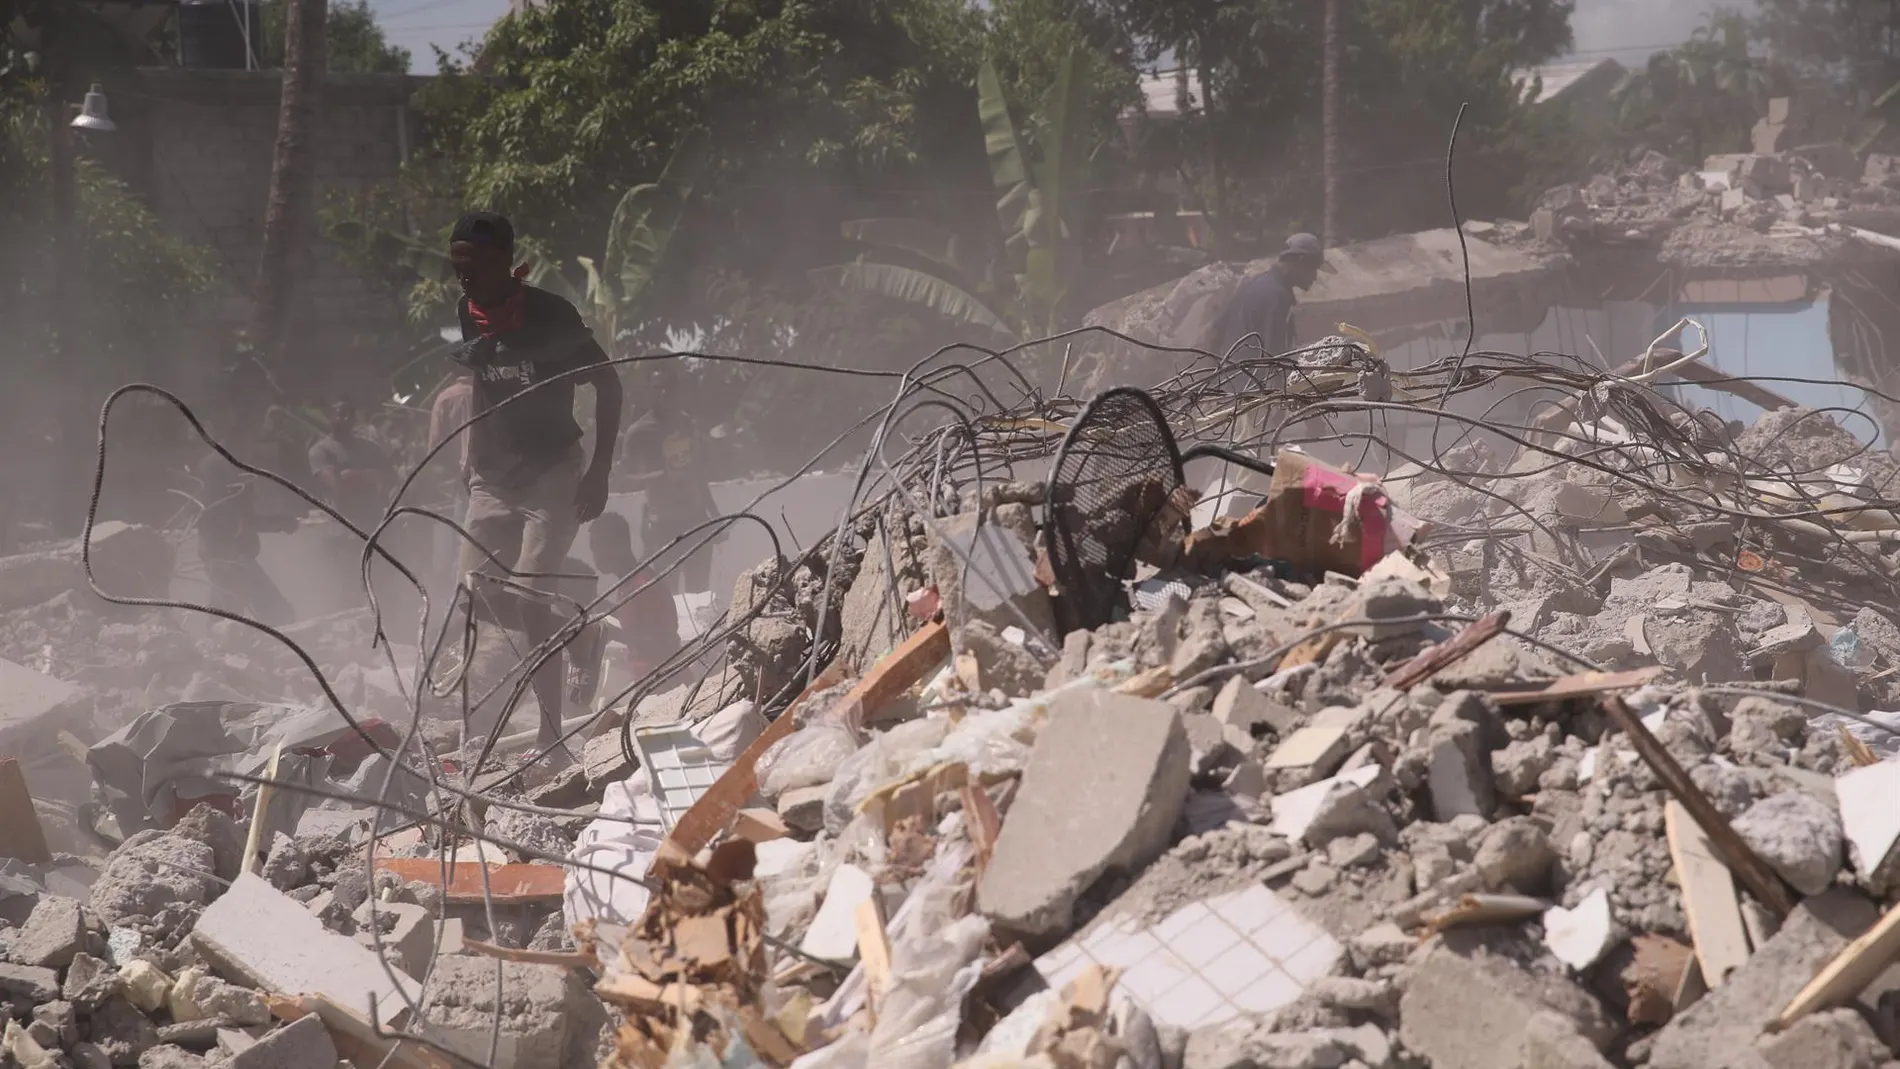 El lamento de una monja tras el terremoto de Haití: "La ayuda ha llegado tarde"